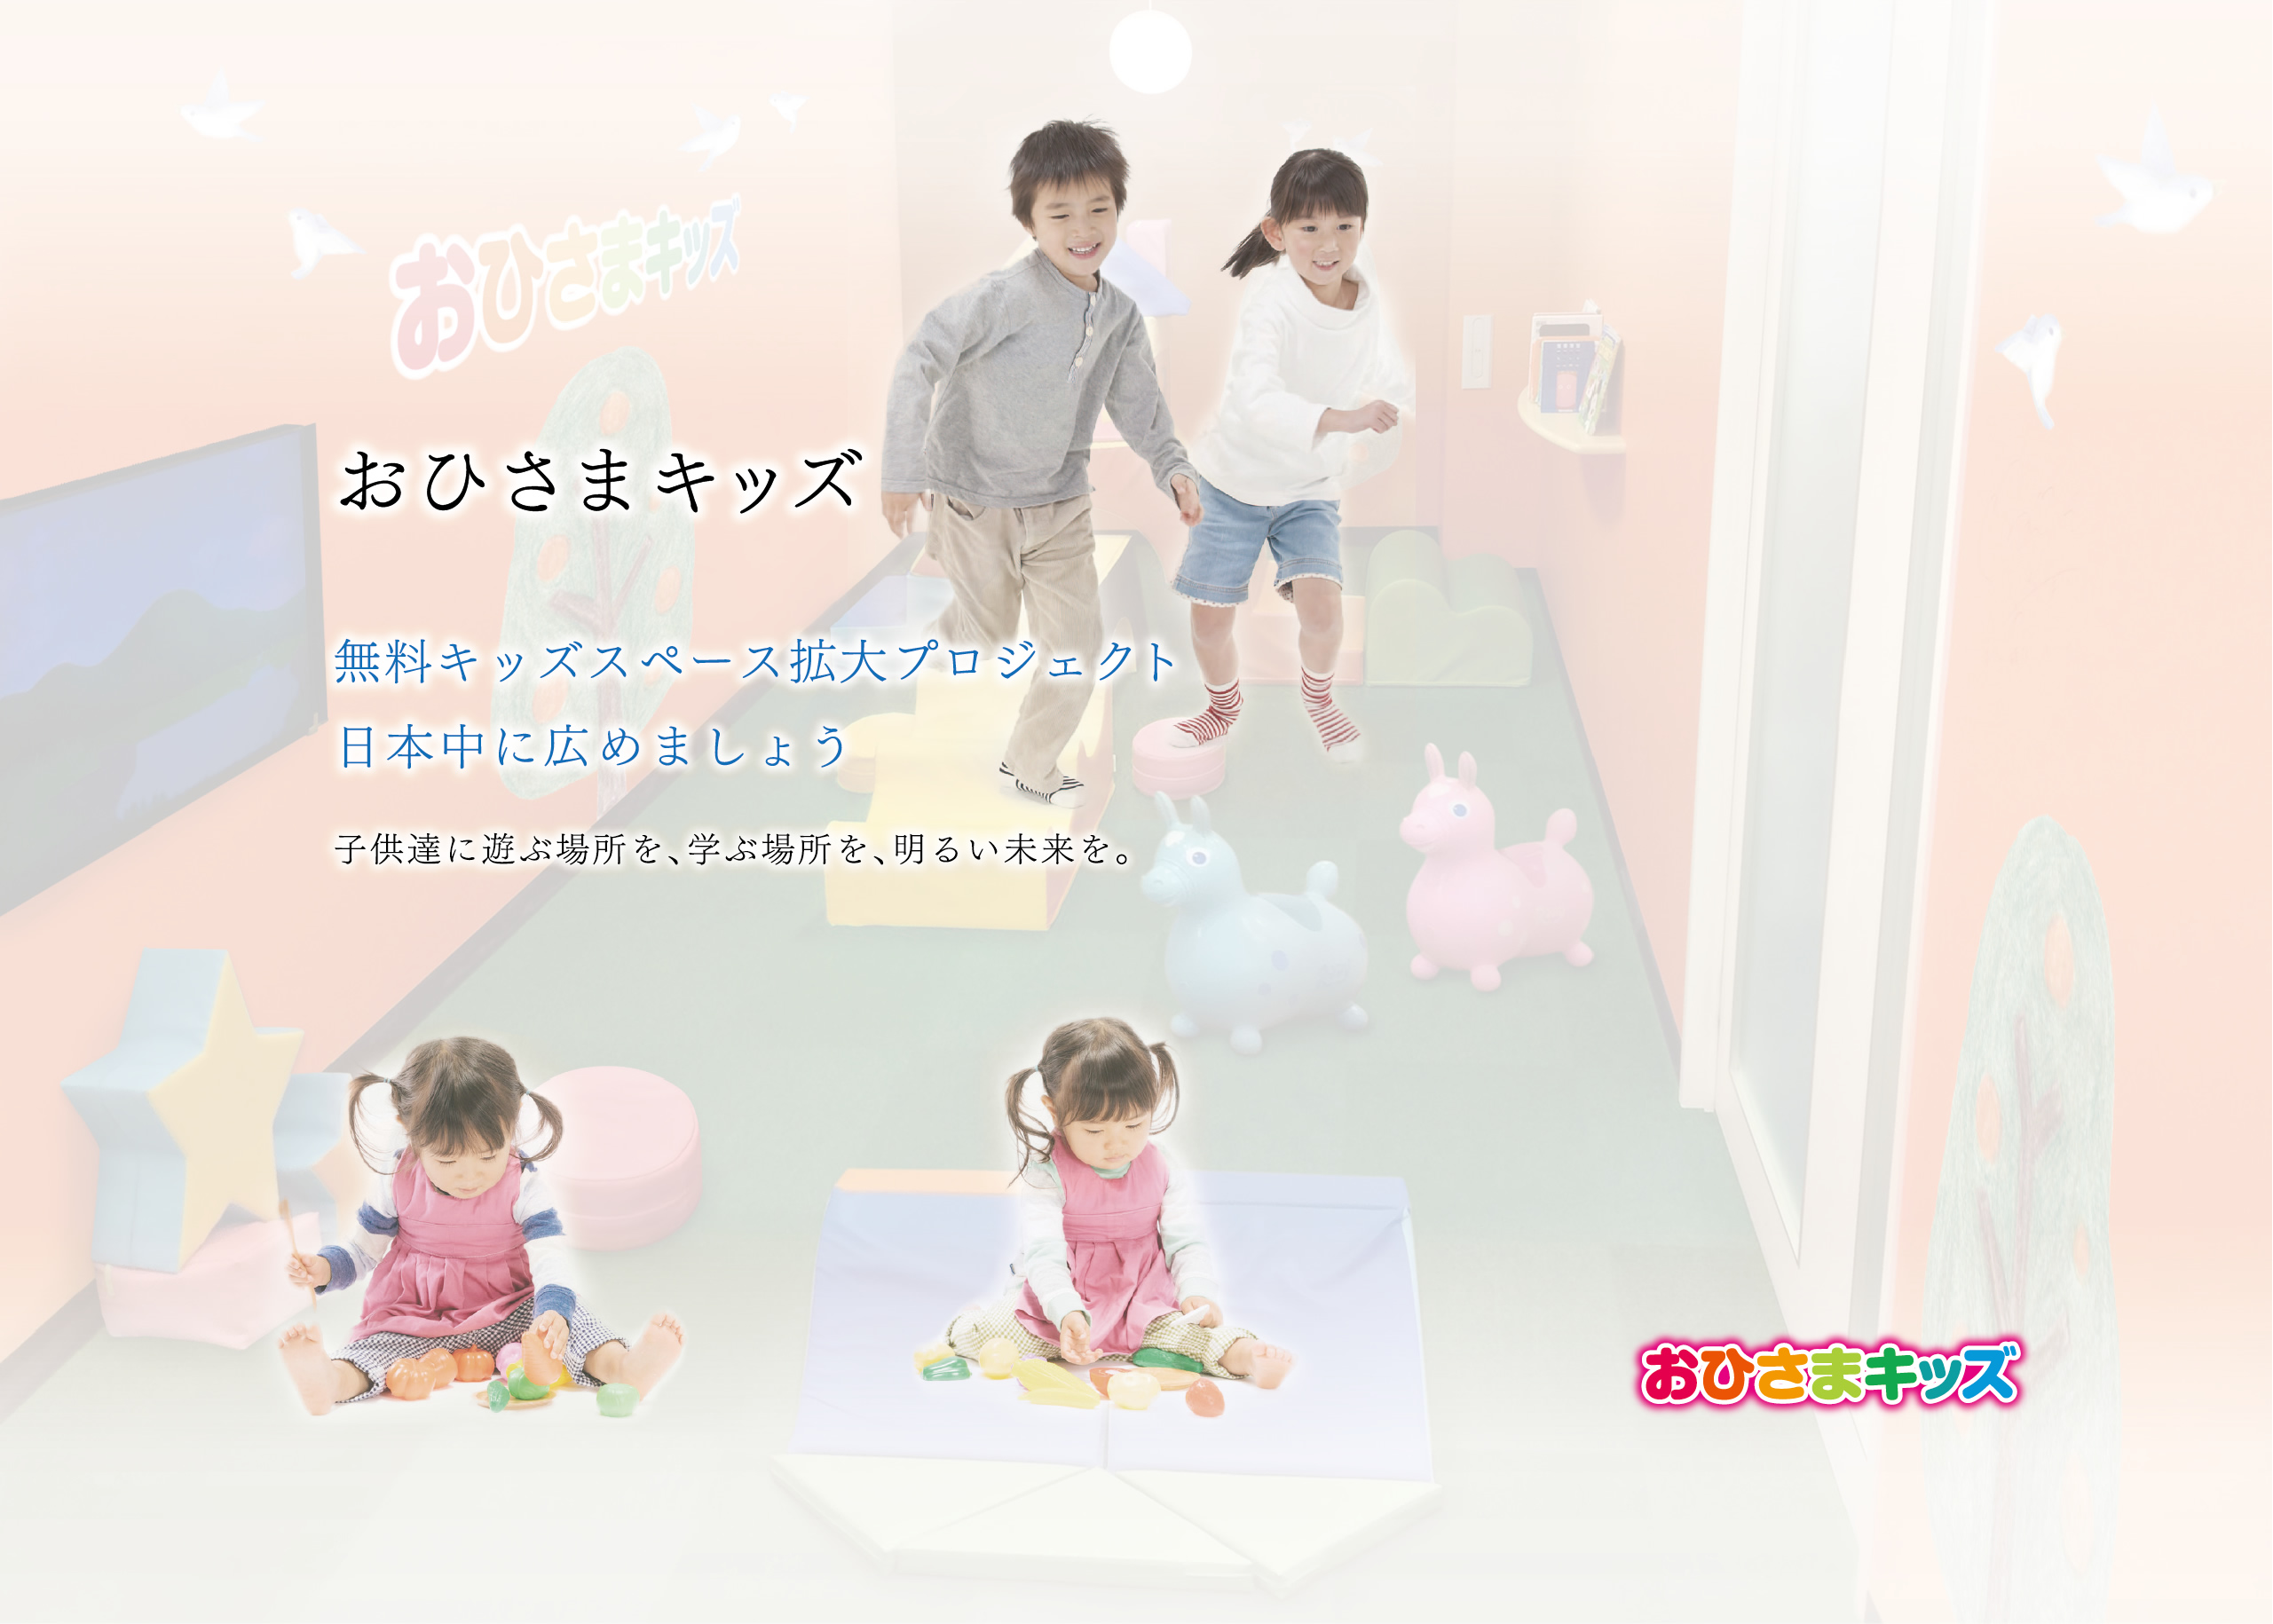 無料キッズスペース拡大プロジェクト 日本中に広めましょう。子供達に遊ぶ場所を、学ぶ場所を、明るい未来を。おひさまキッズ